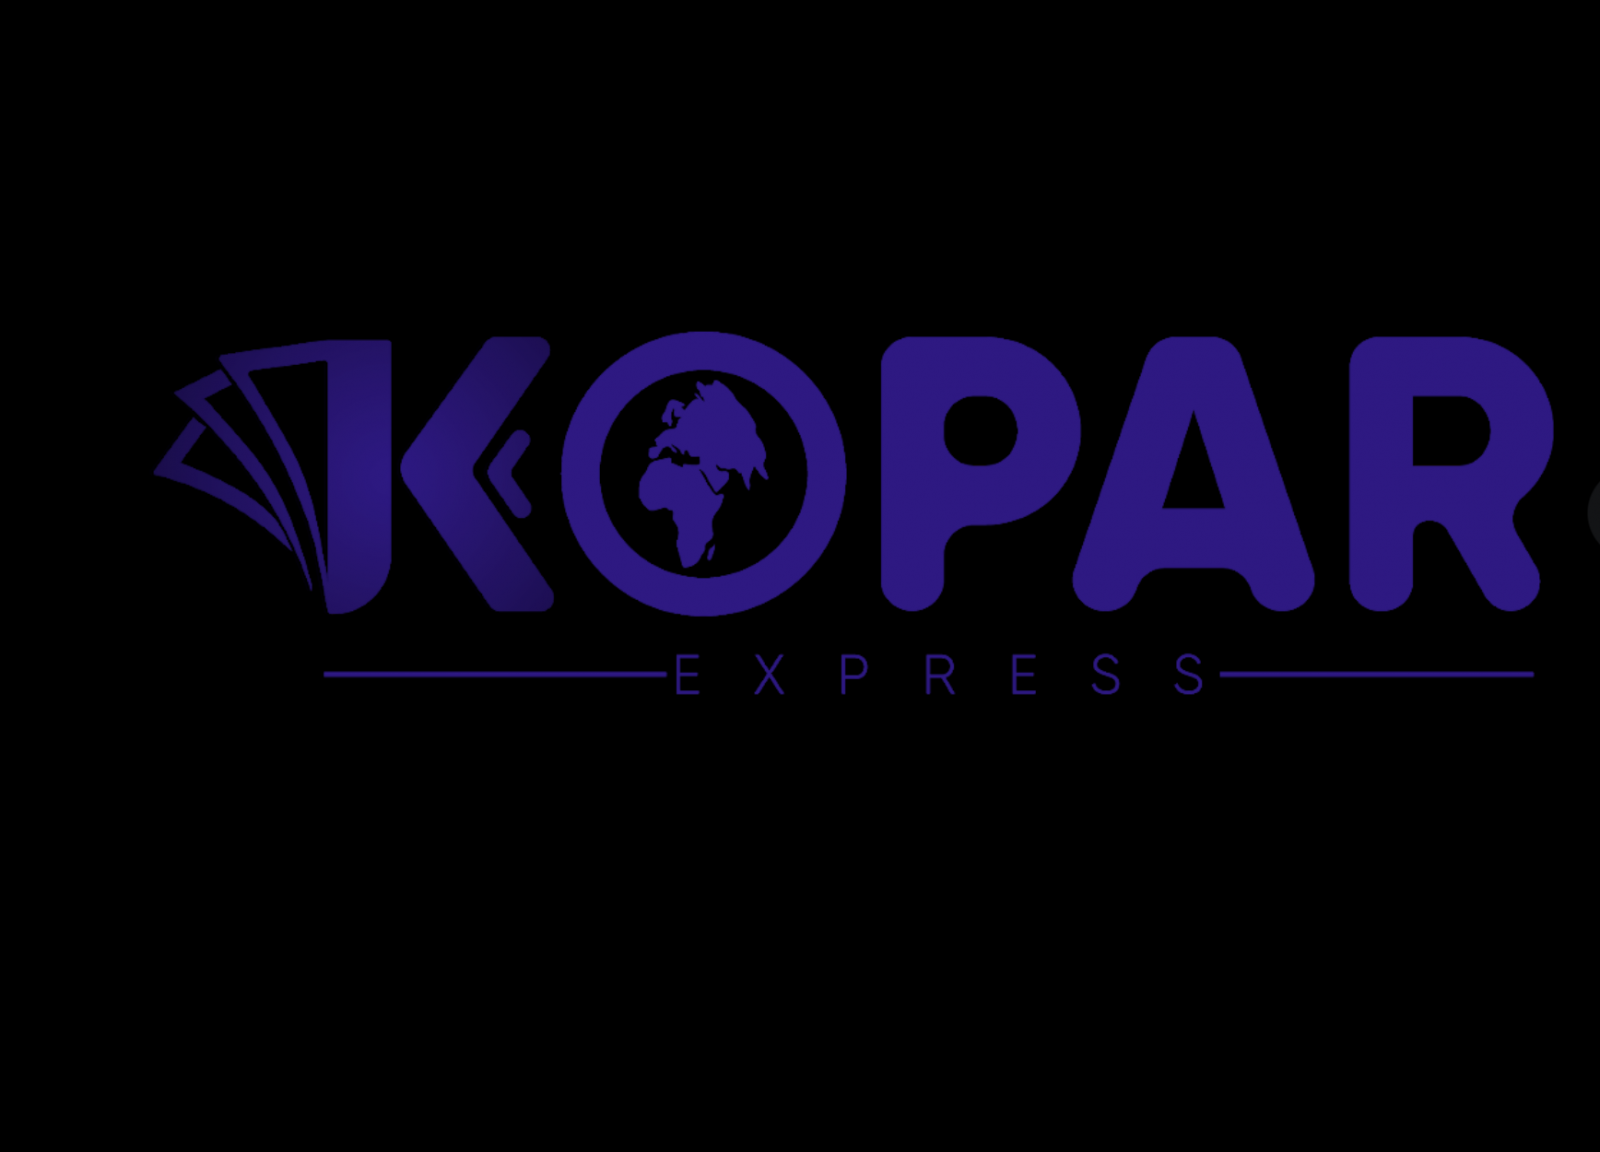 Kopar Express : Un actionnaire arrêté !